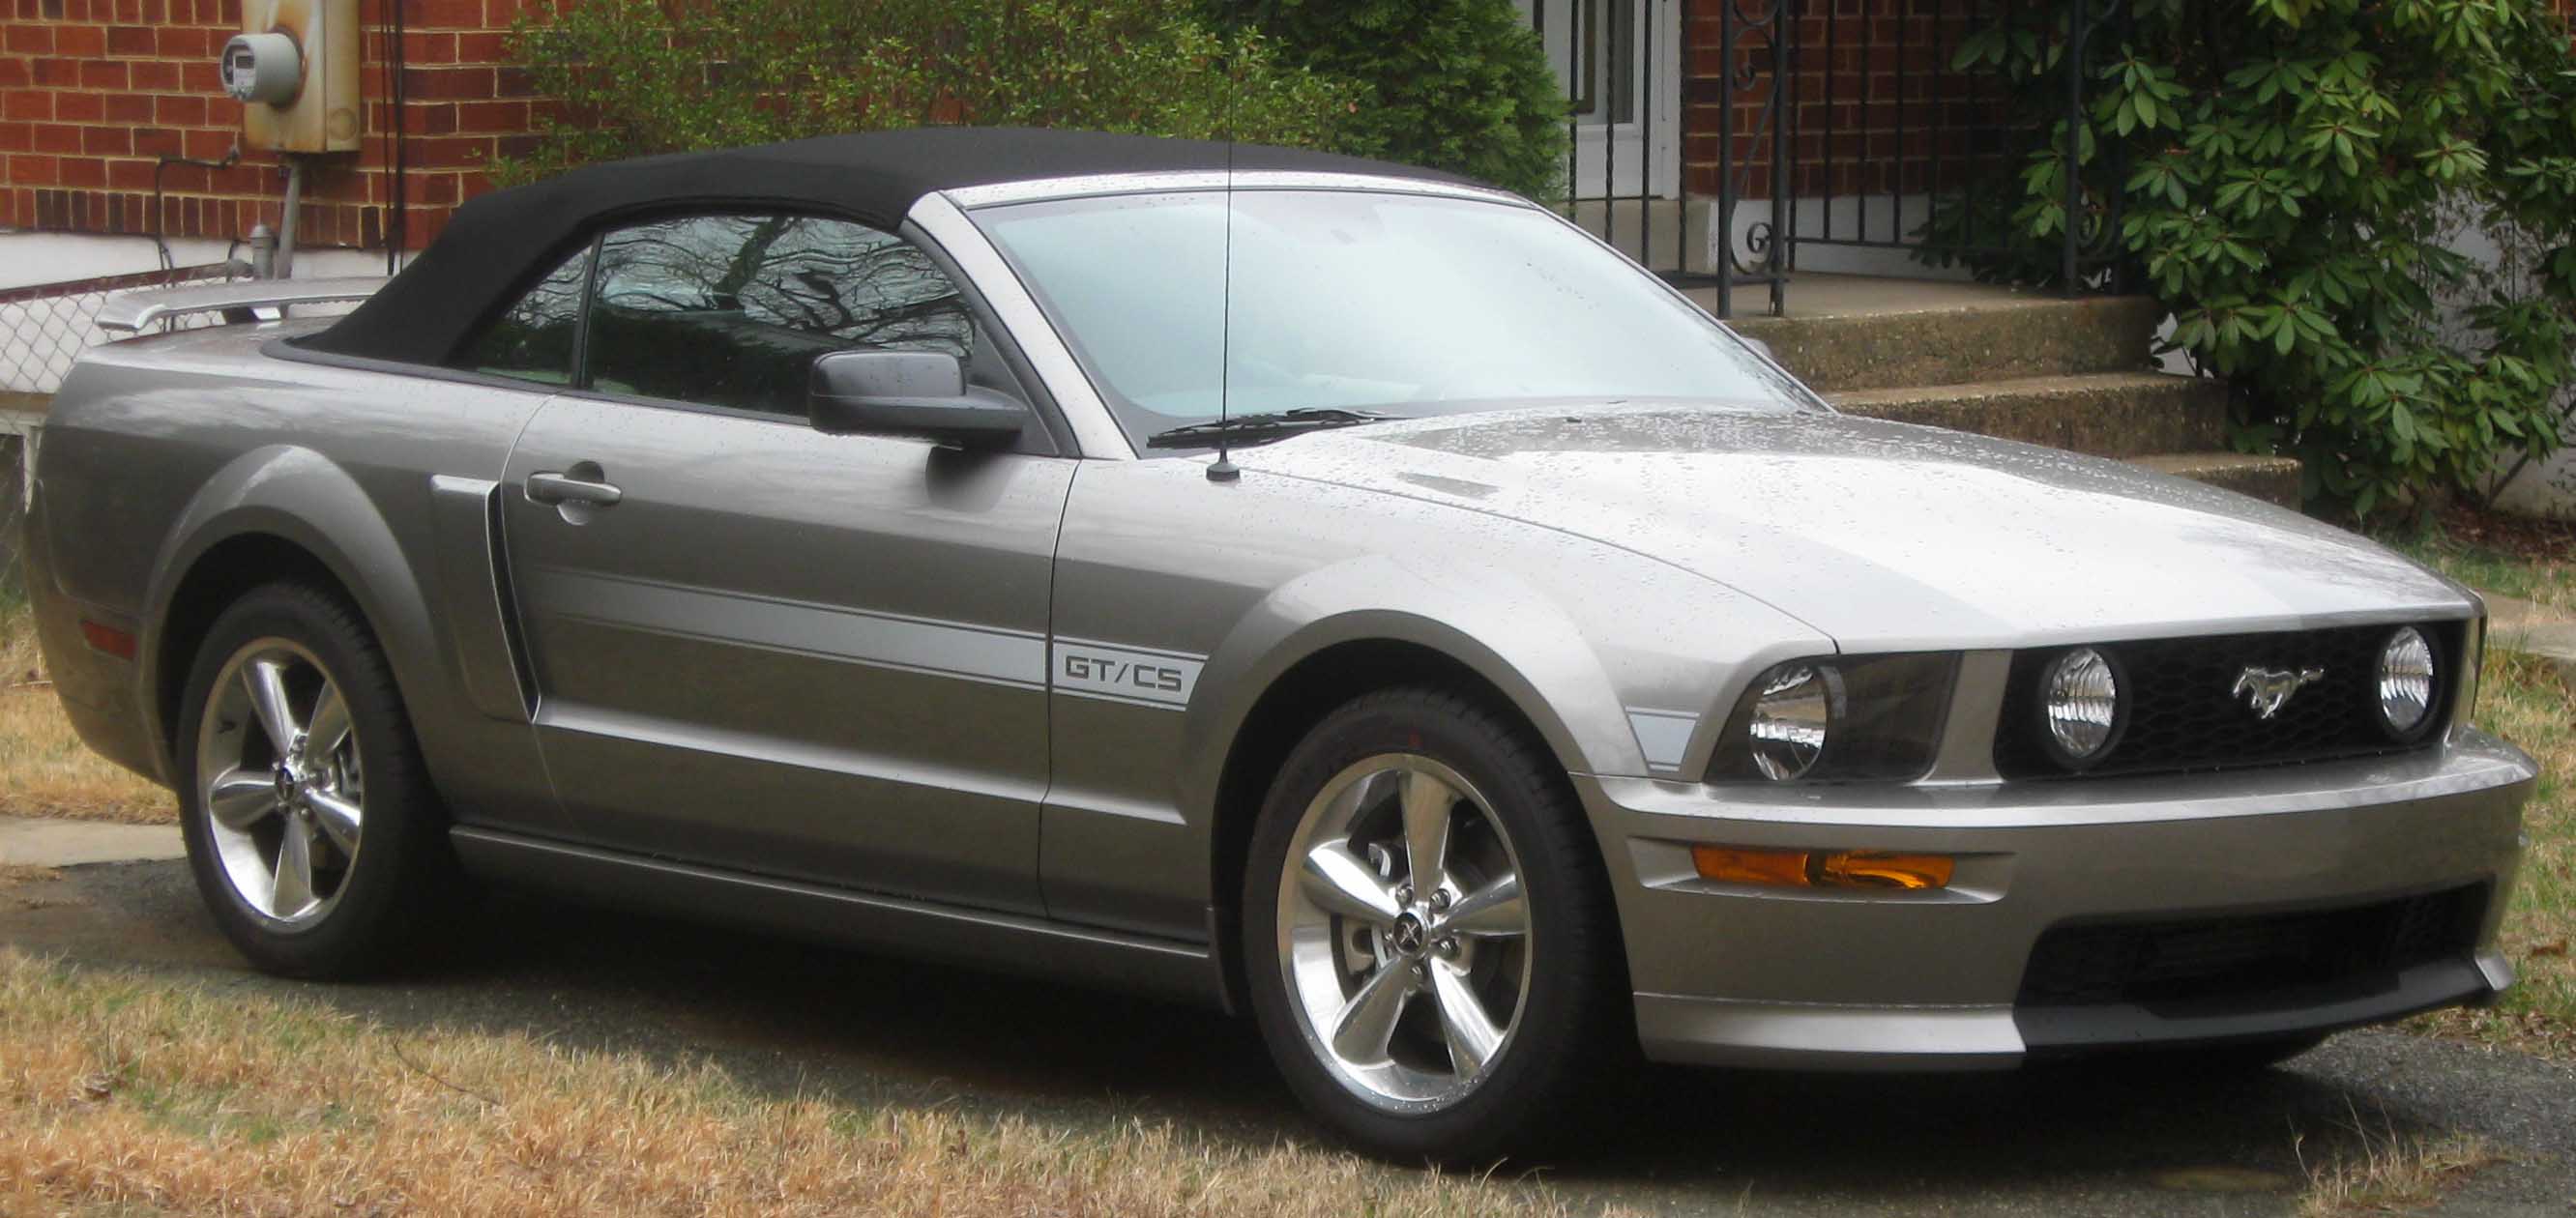 2007 Mustang Manual Transmission Swap